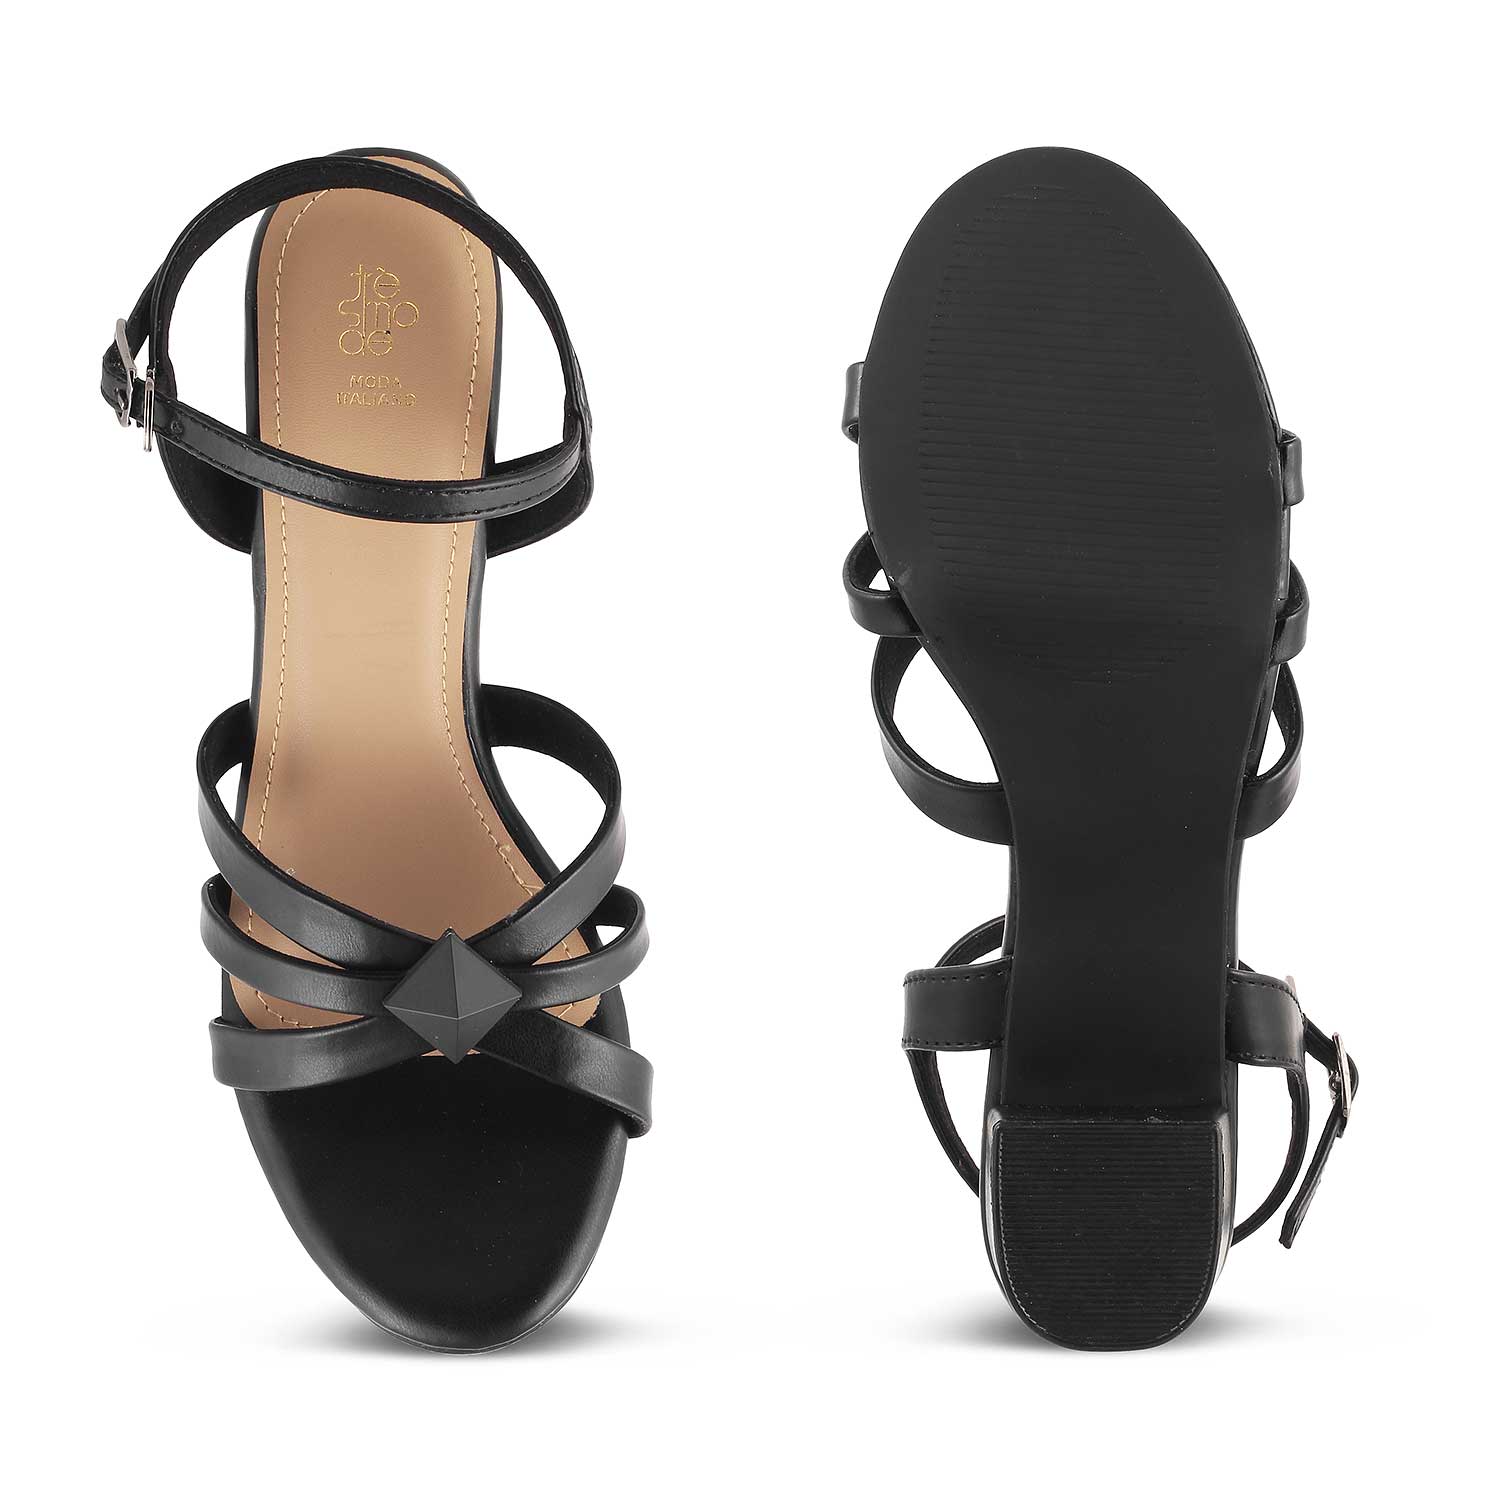 The Parma Black Women's Dress Block Heel Sandals Tresmode - Tresmode